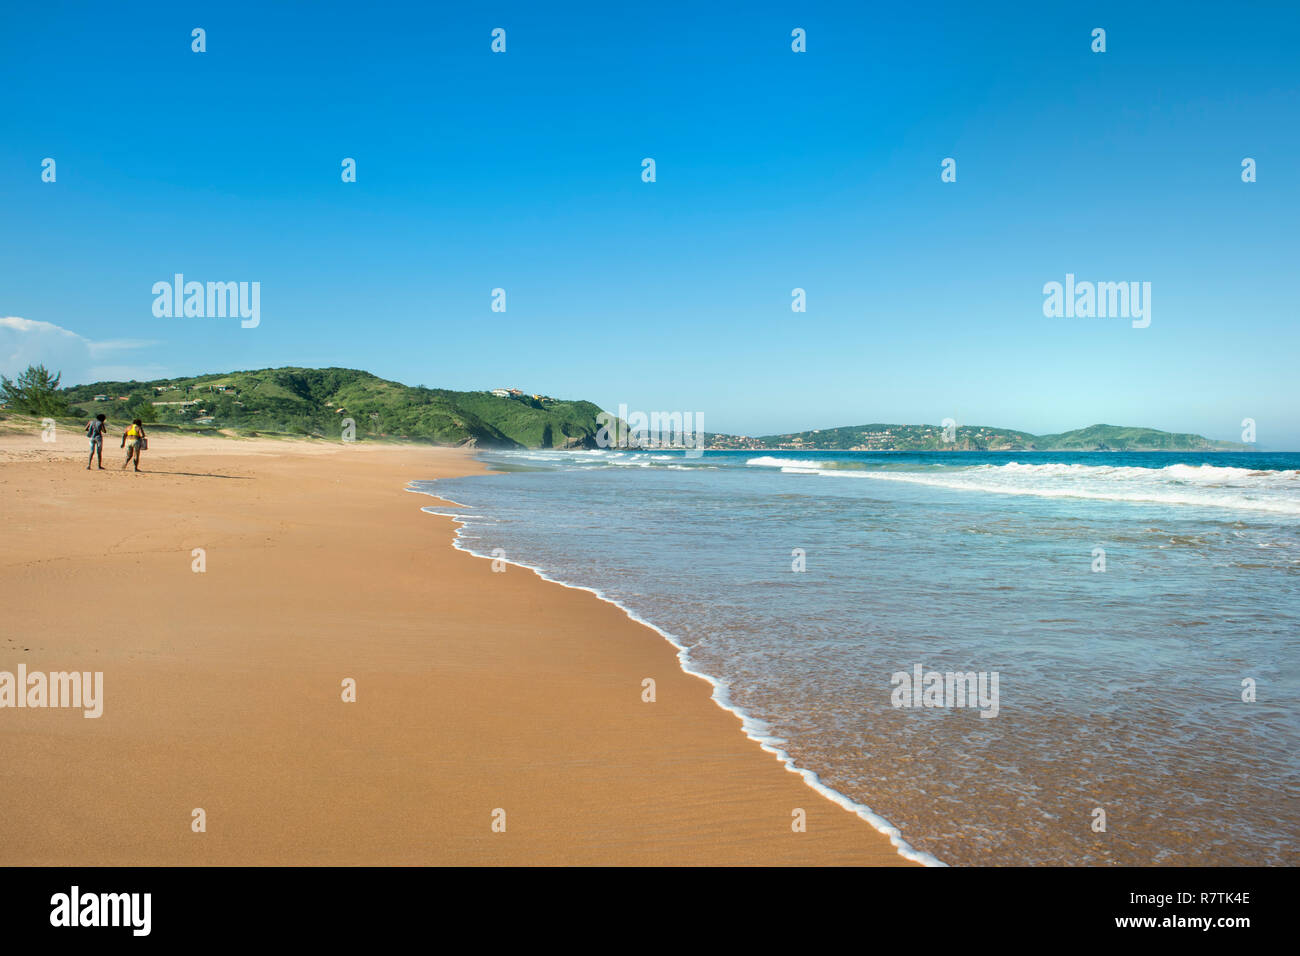 Praia Tucuns beach, Armação dos Búzios, Rio de Janeiro State, Brazil Stock Photo